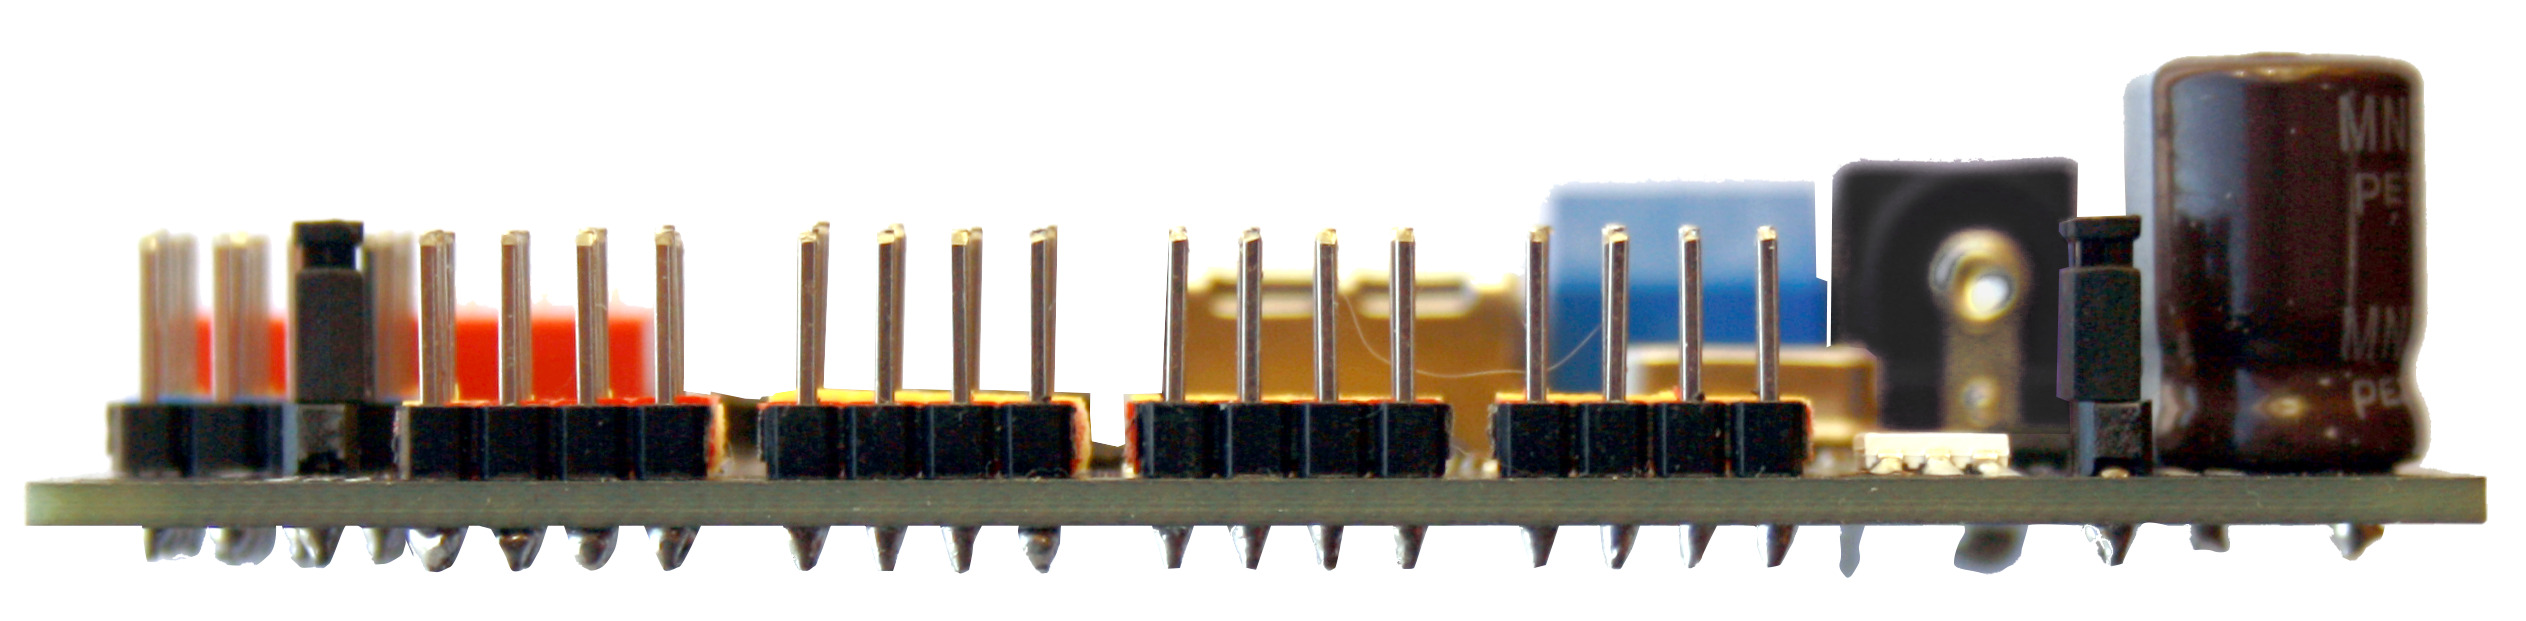 Драйвер сервоприводов / Servo driver - RoboIntellect controller m1 - Arduino совместимый контроллер (аналог PCA 9685) с встроенным преобразователем интерфейса USB / I2C и RGB i2c светодиодом и входом для датчика измерения силы тока